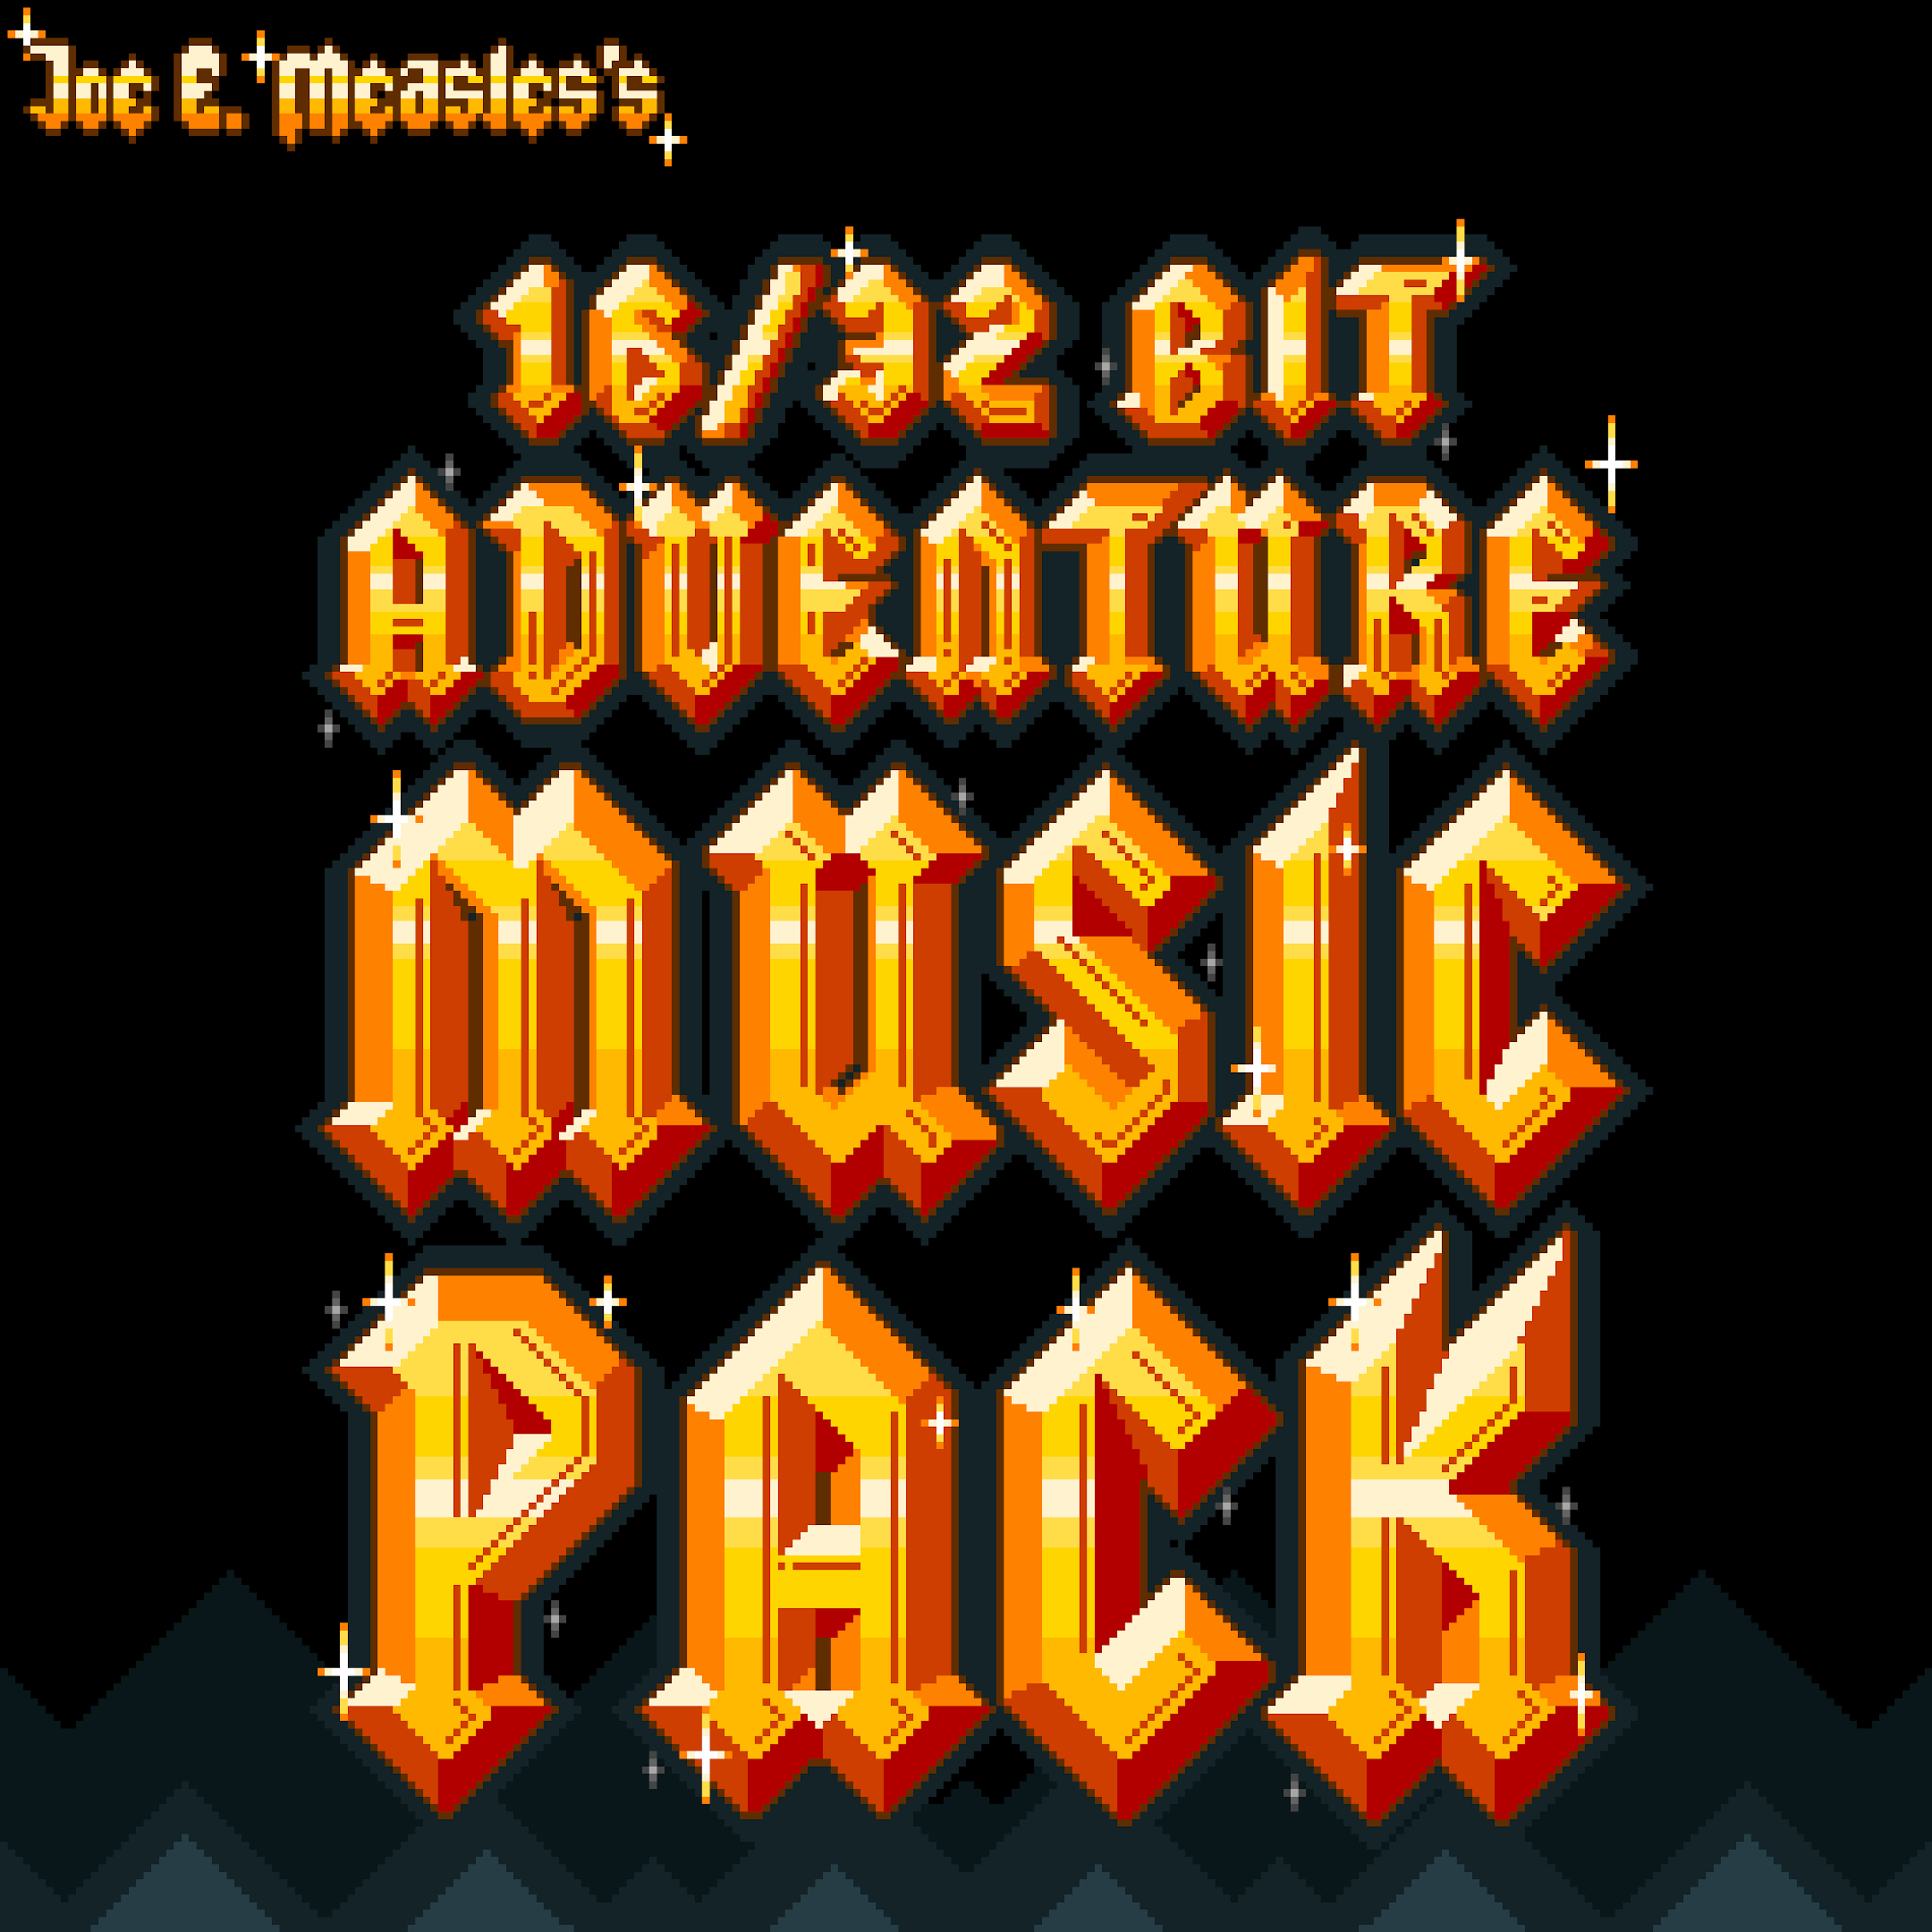 FREE 16 BIT RPG or ADVENTURE MUSIC PACK